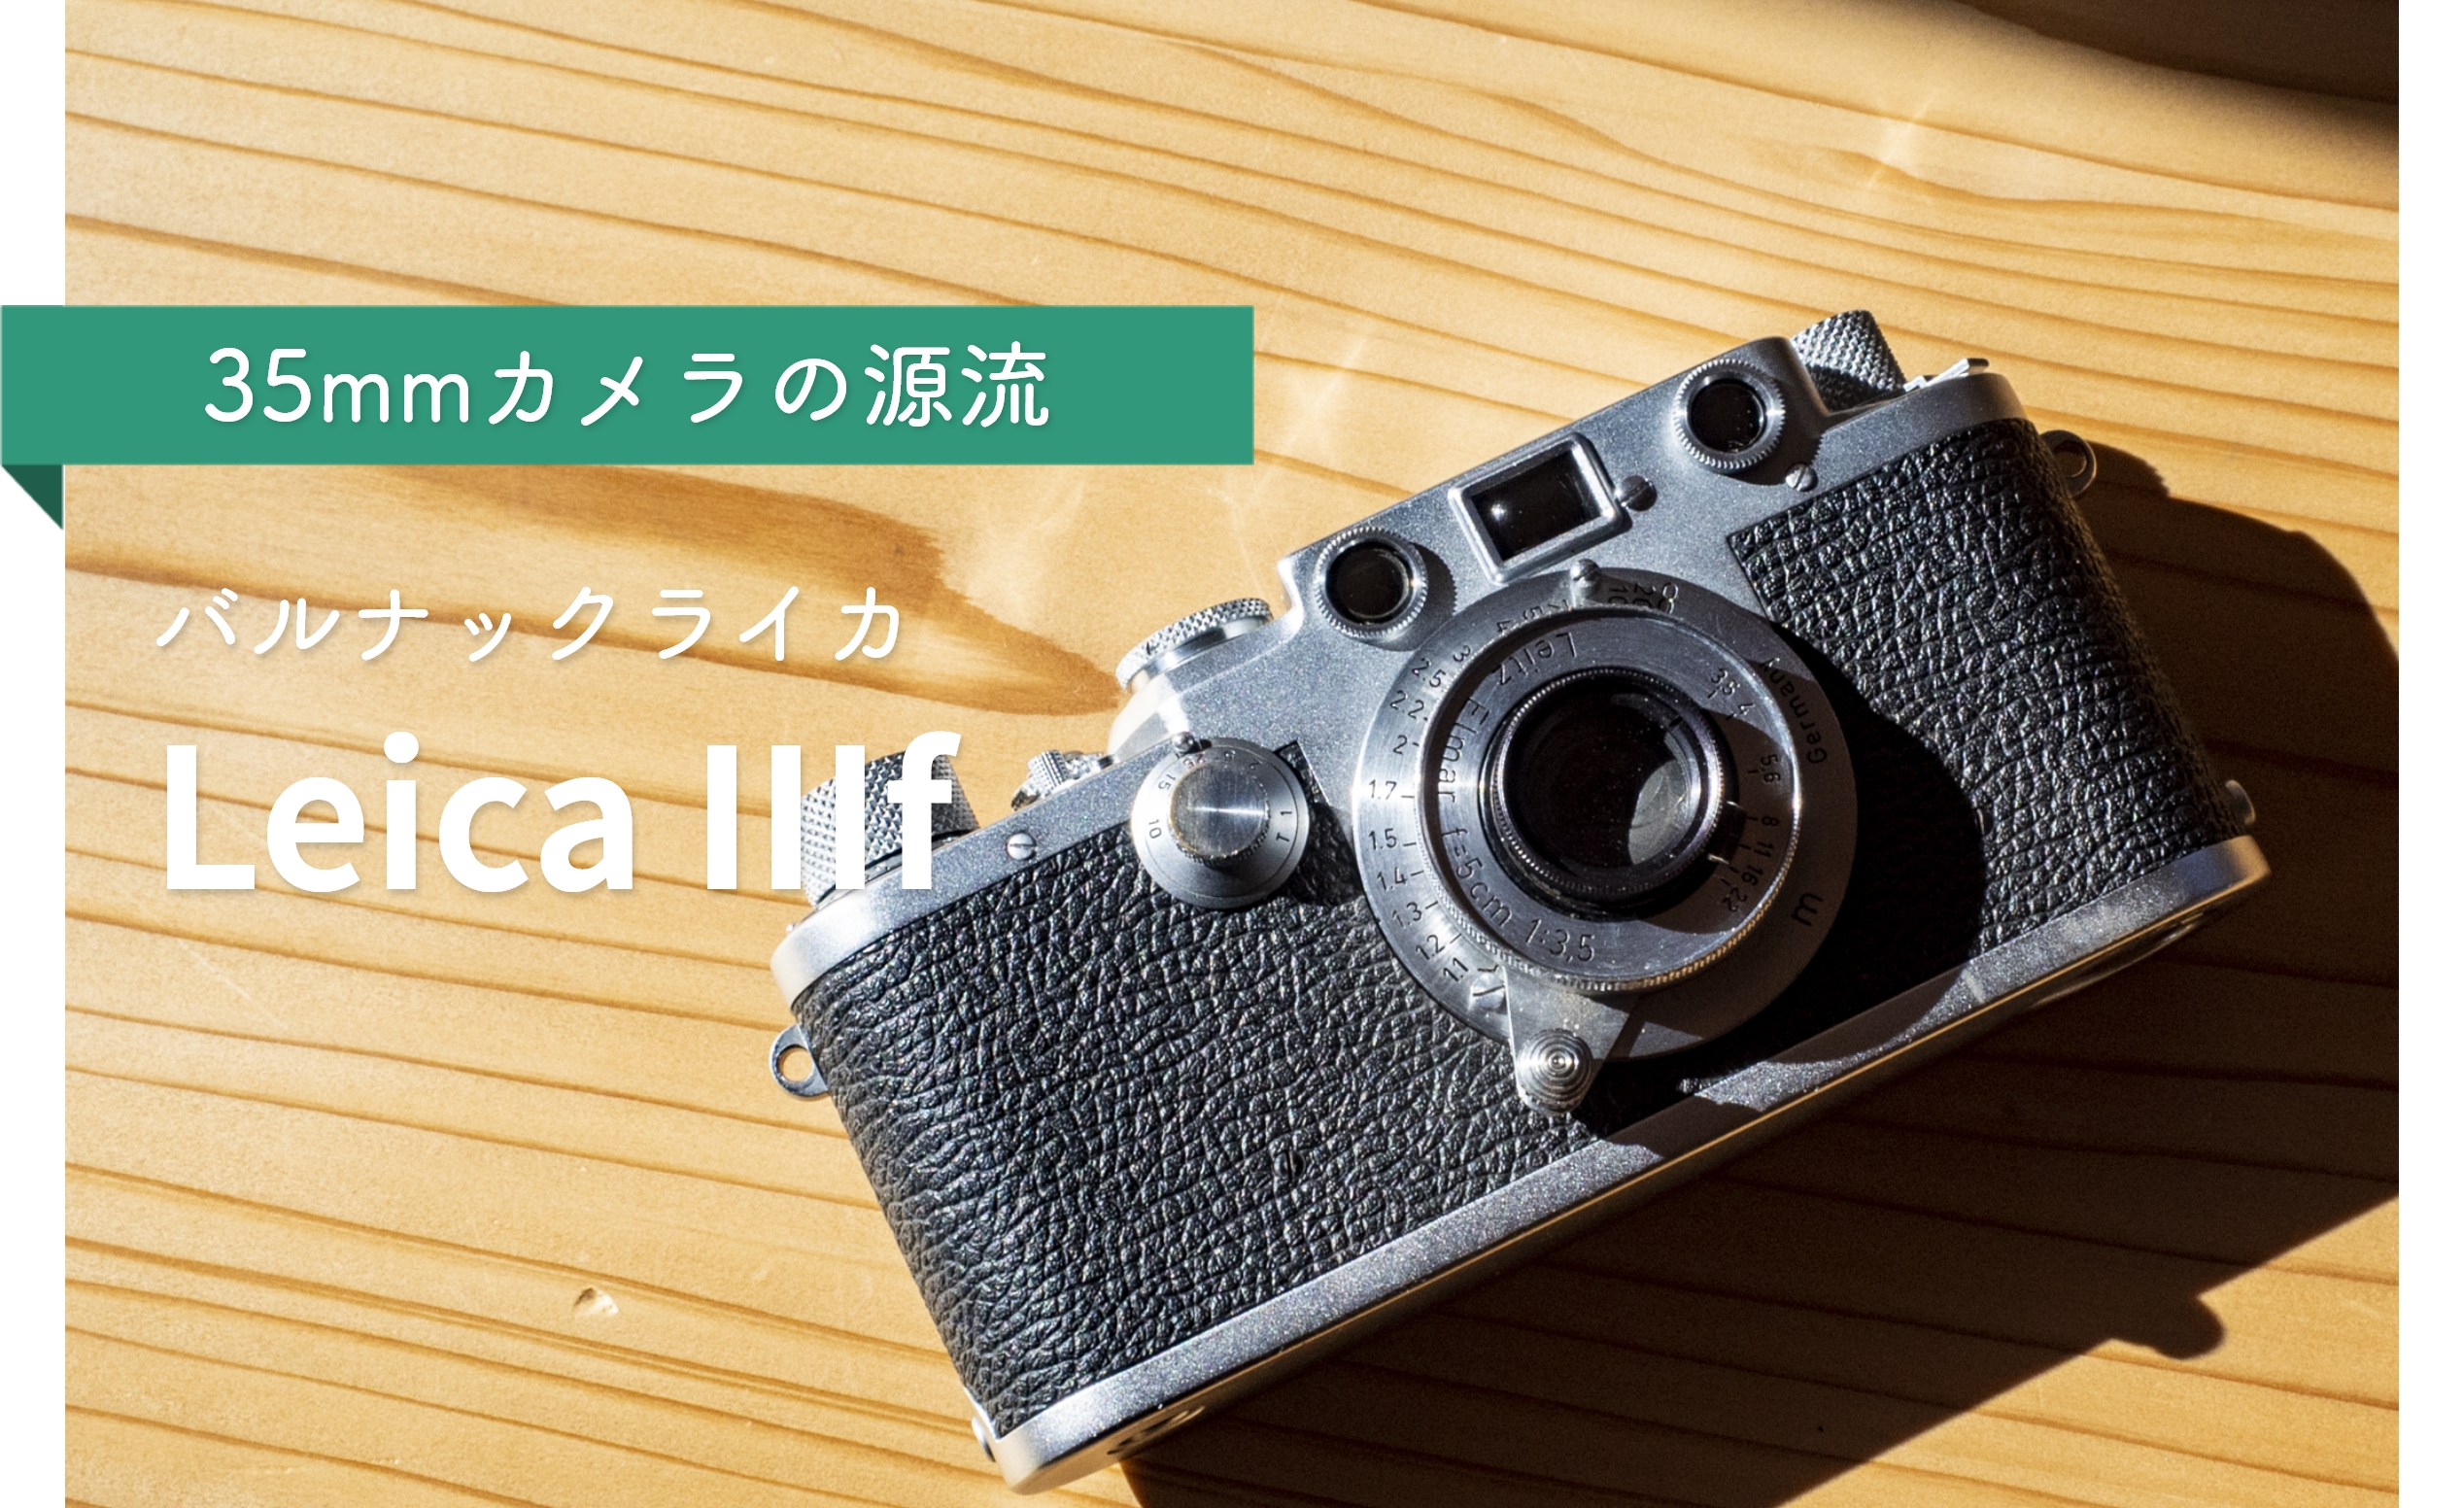 35mmフィルムカメラの源流【ライカ IIIf】を購入。初ライカを手にした高揚感と幸福感を語る